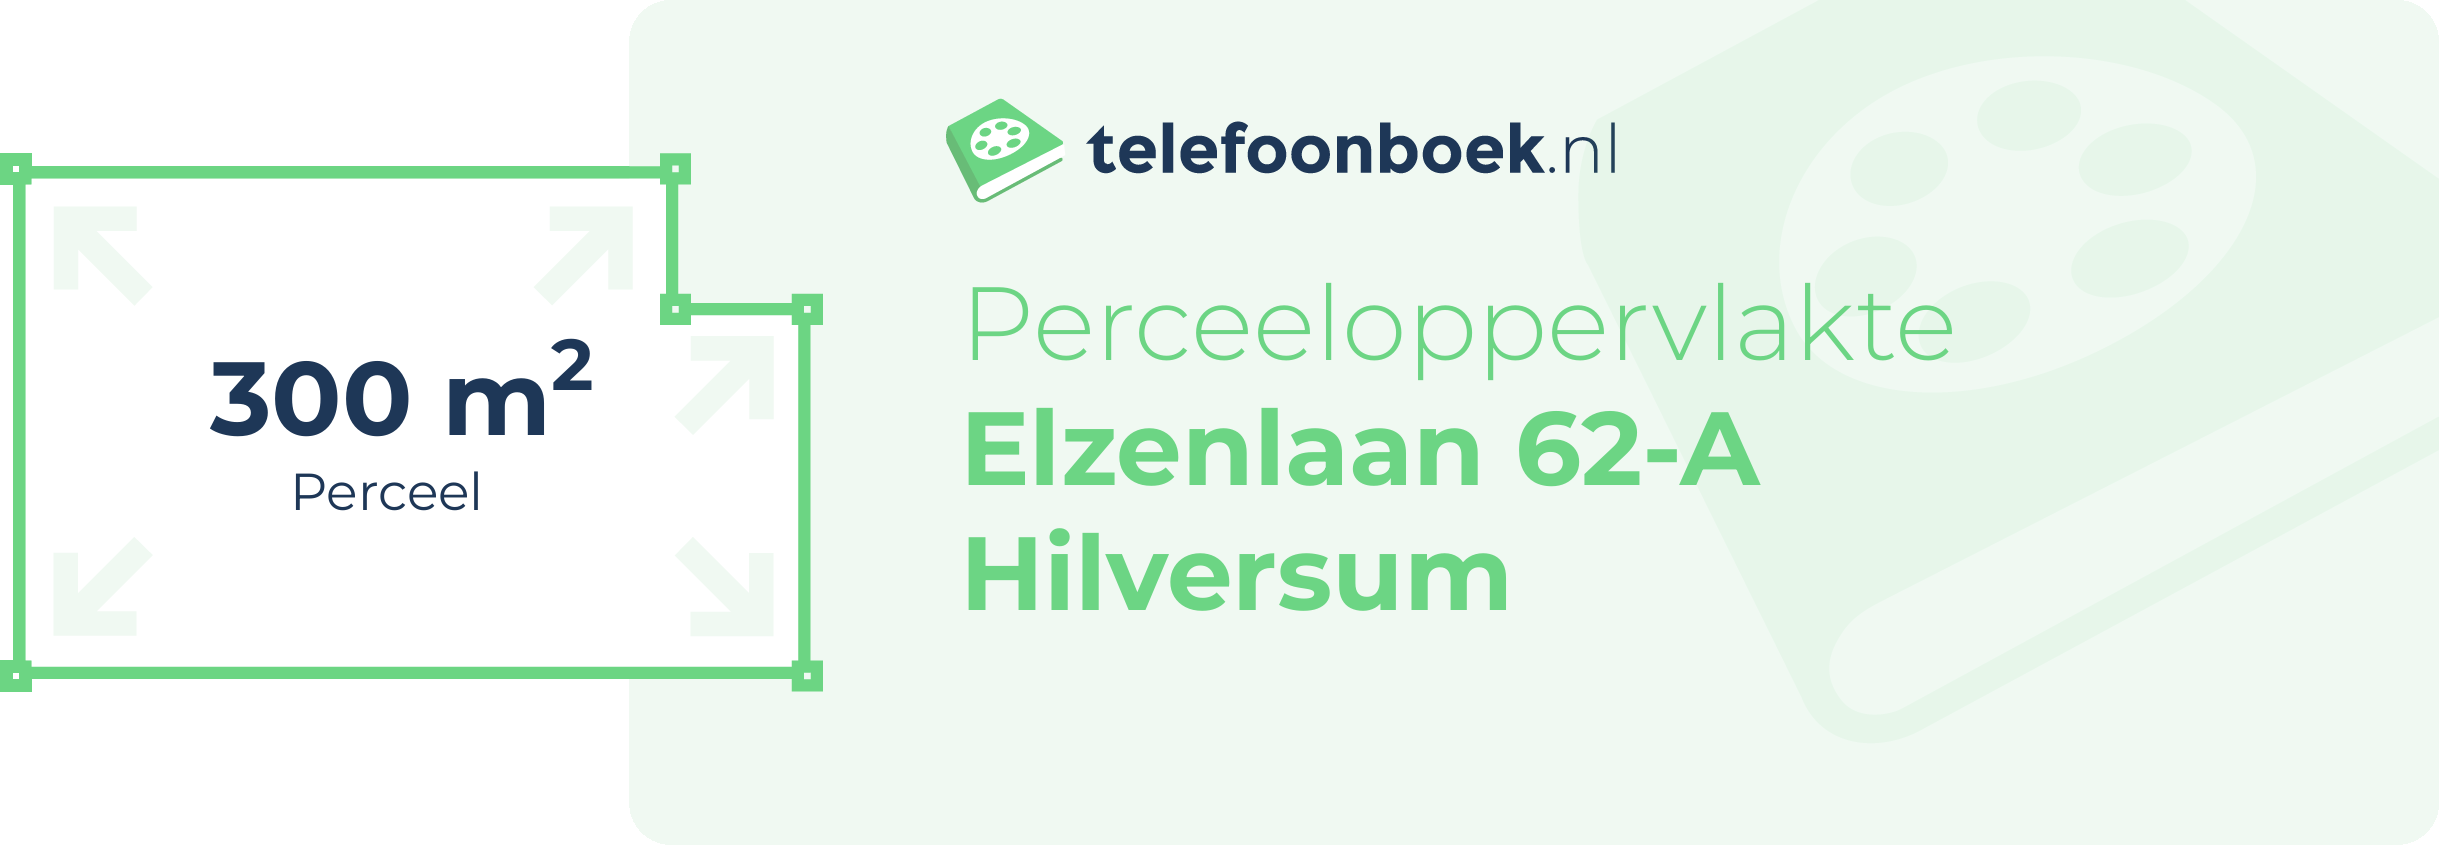 Perceeloppervlakte Elzenlaan 62-A Hilversum